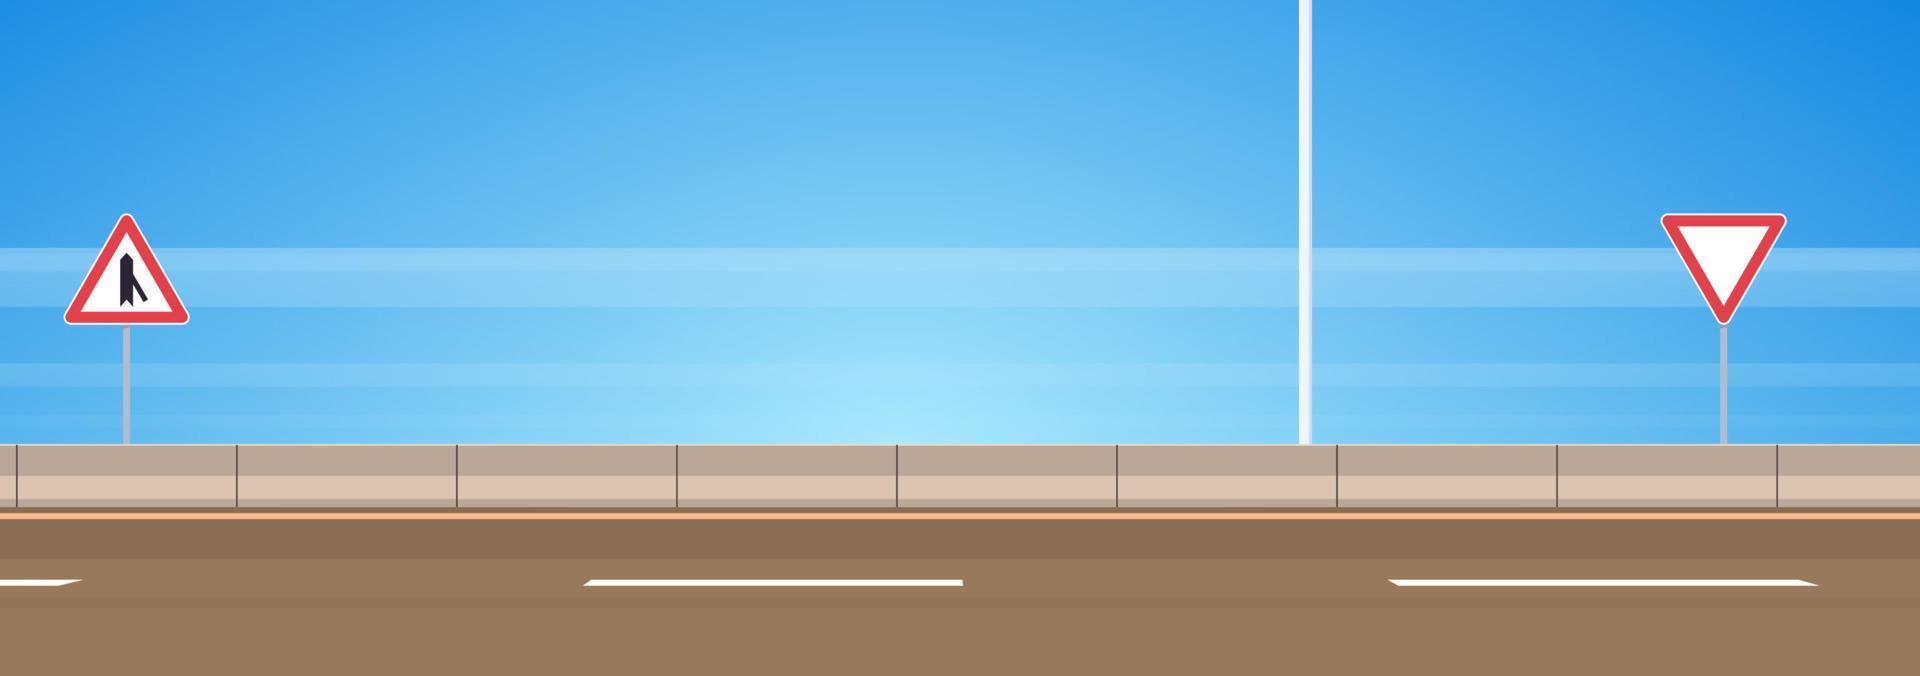 carretera asfaltada y señal de tráfico en la carretera con cielo azul ilustración vectorial plana. vector